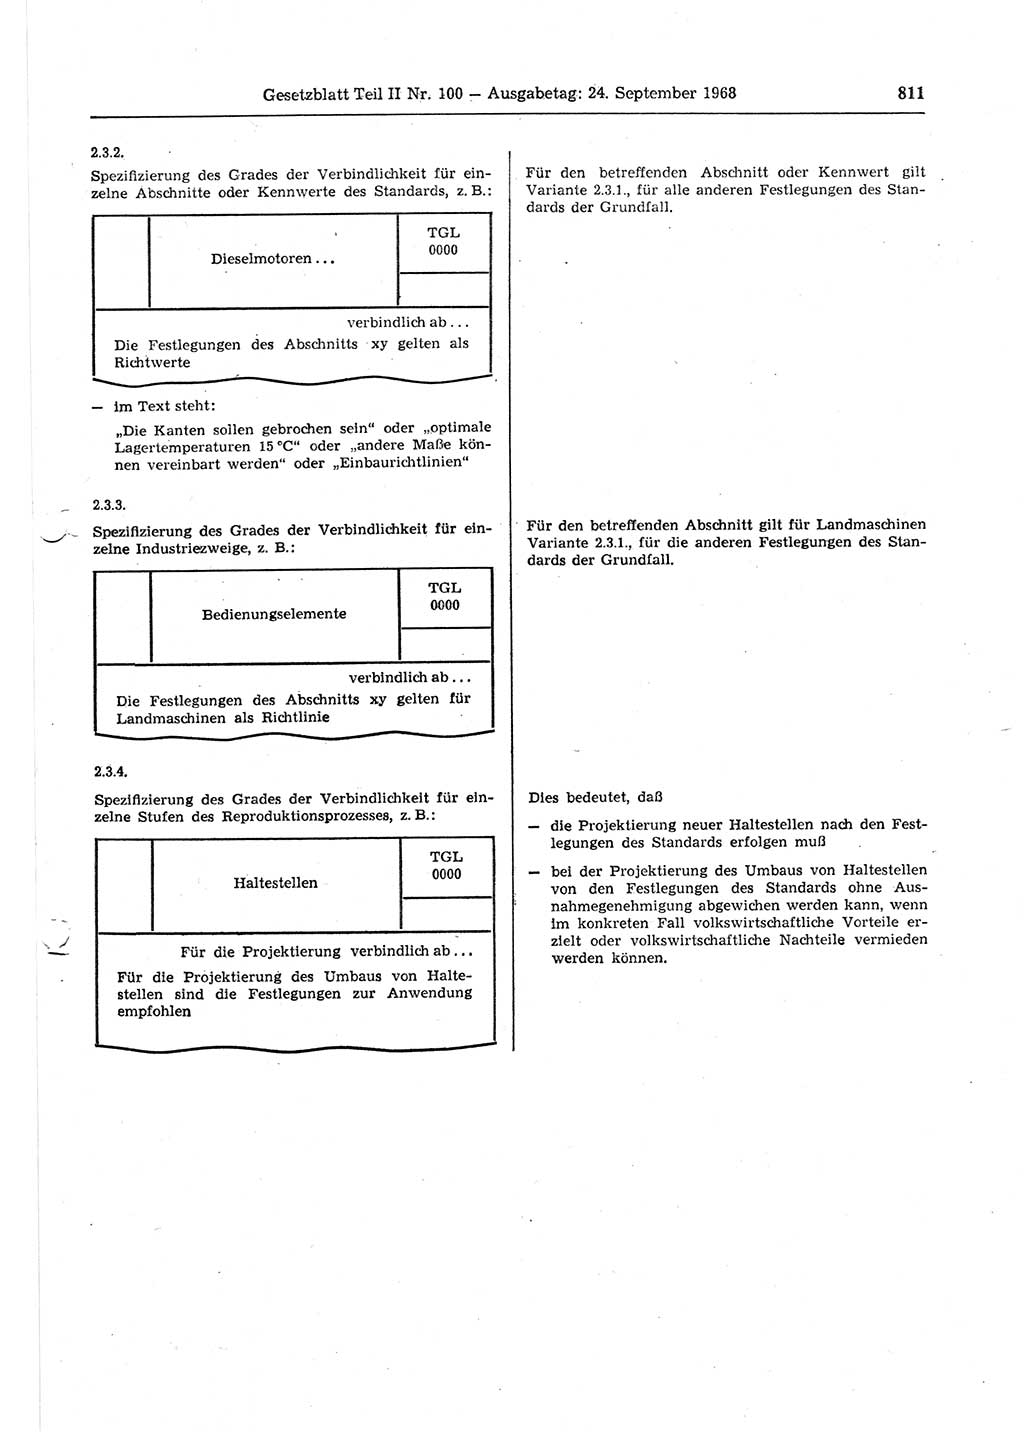 Gesetzblatt (GBl.) der Deutschen Demokratischen Republik (DDR) Teil ⅠⅠ 1968, Seite 811 (GBl. DDR ⅠⅠ 1968, S. 811)